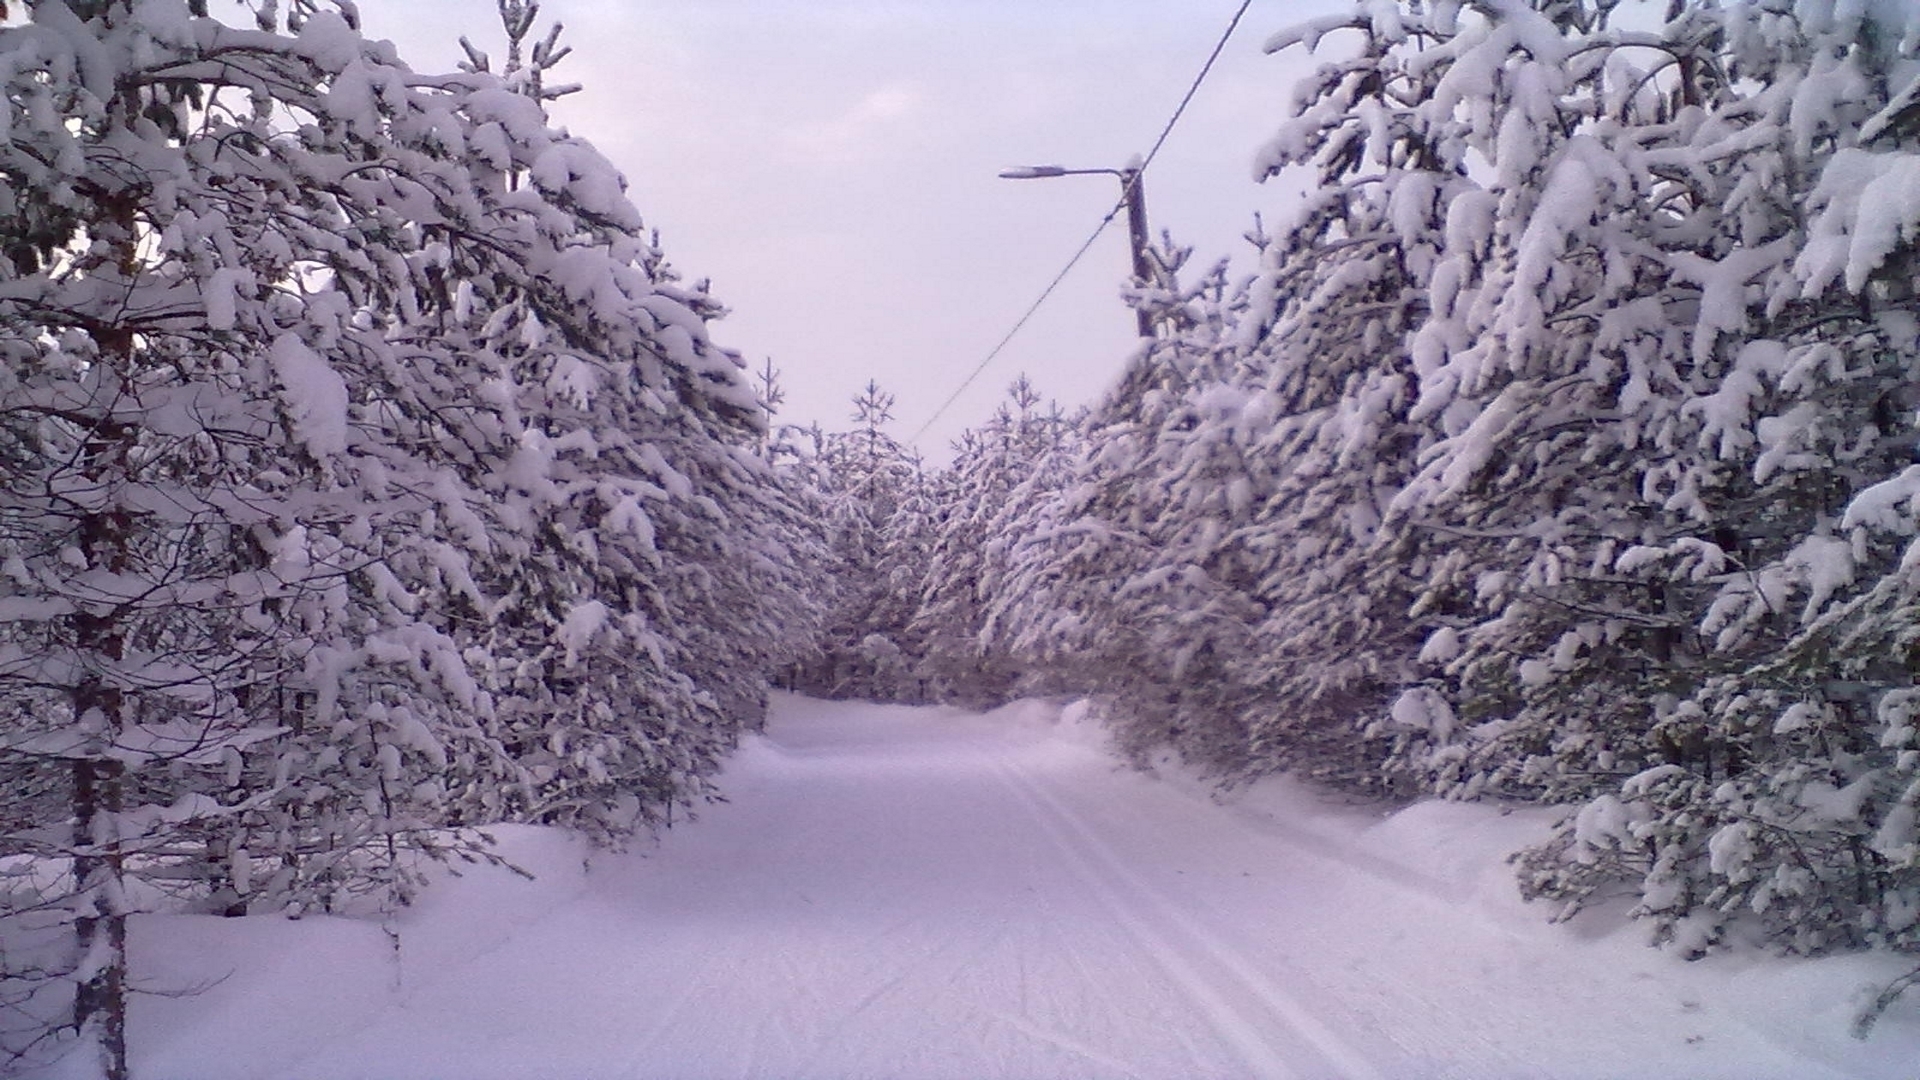 Скачать обои бесплатно Зима, Снег, Дерево, Фотографии картинка на рабочий стол ПК